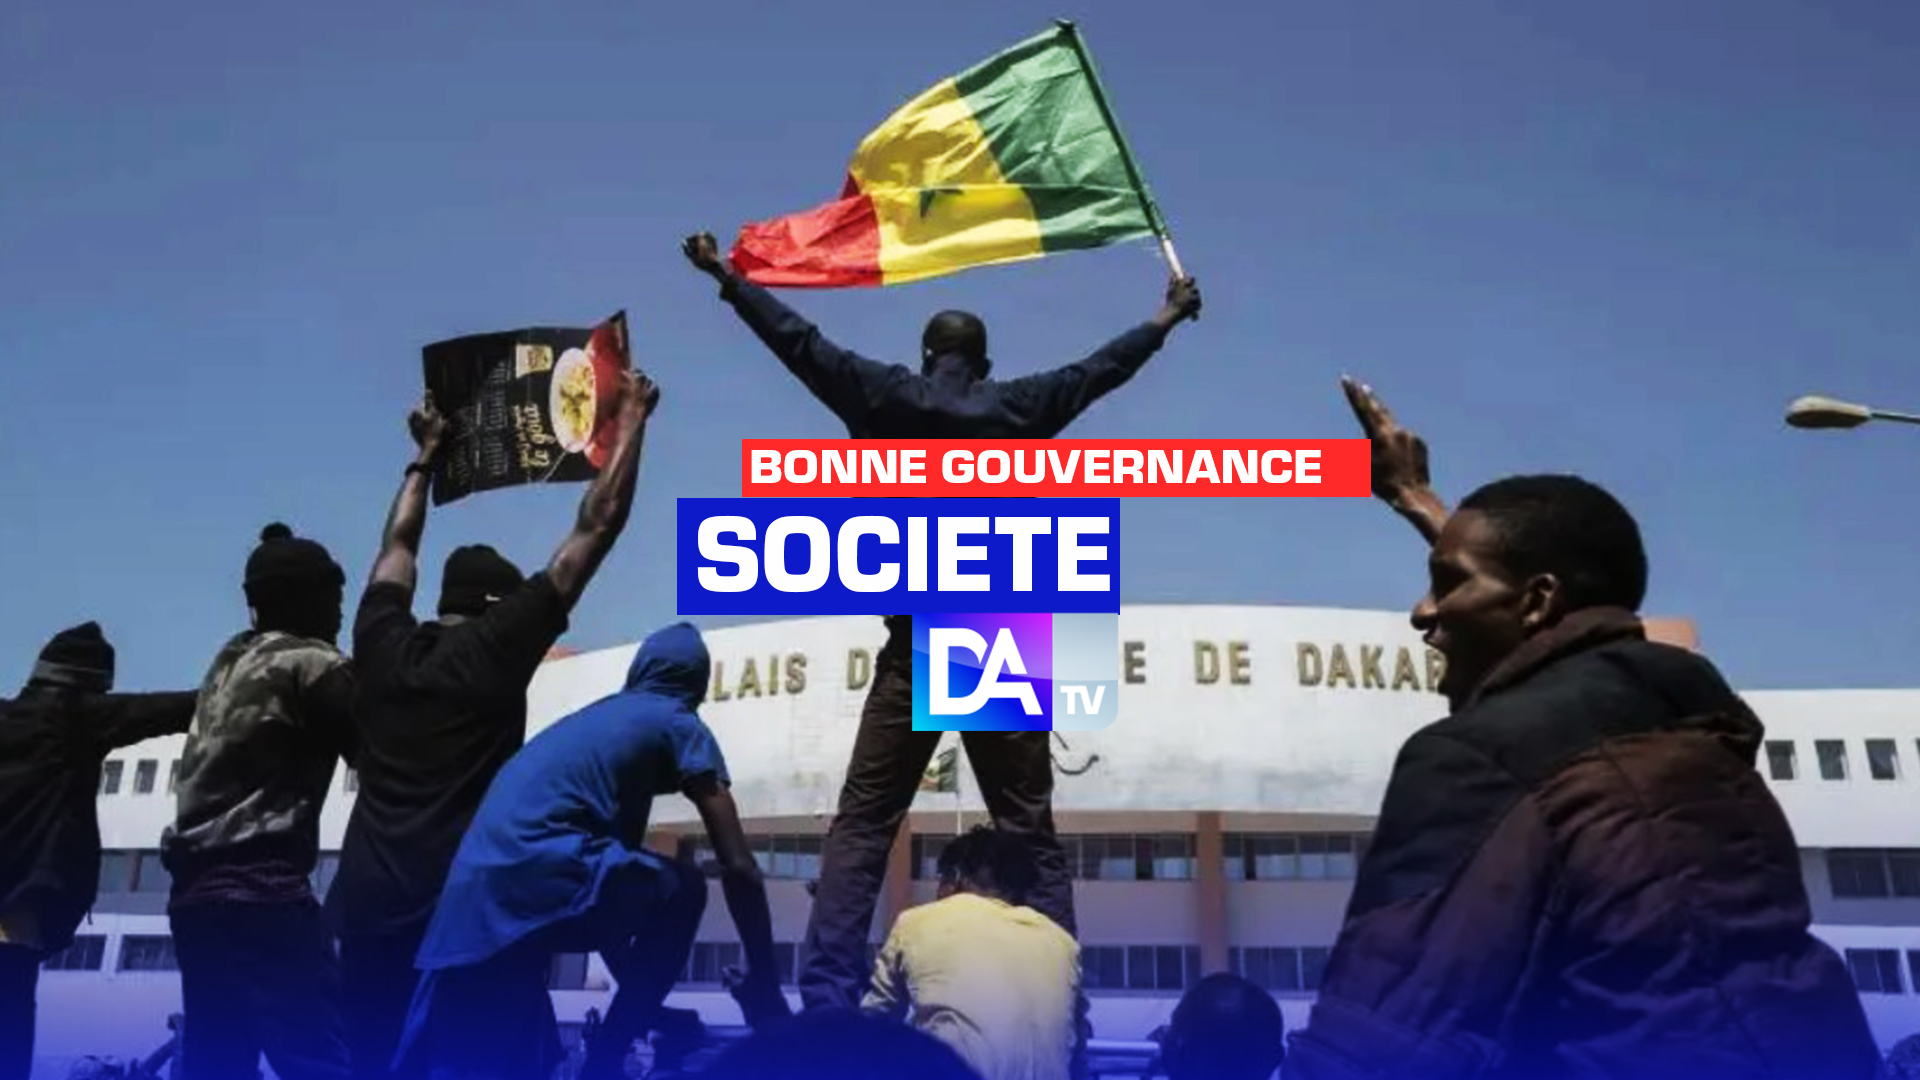 État de droit : La note du citoyen sénégalais octroyée au régime de Macky Sall depuis 2012 (IIAG 2022)